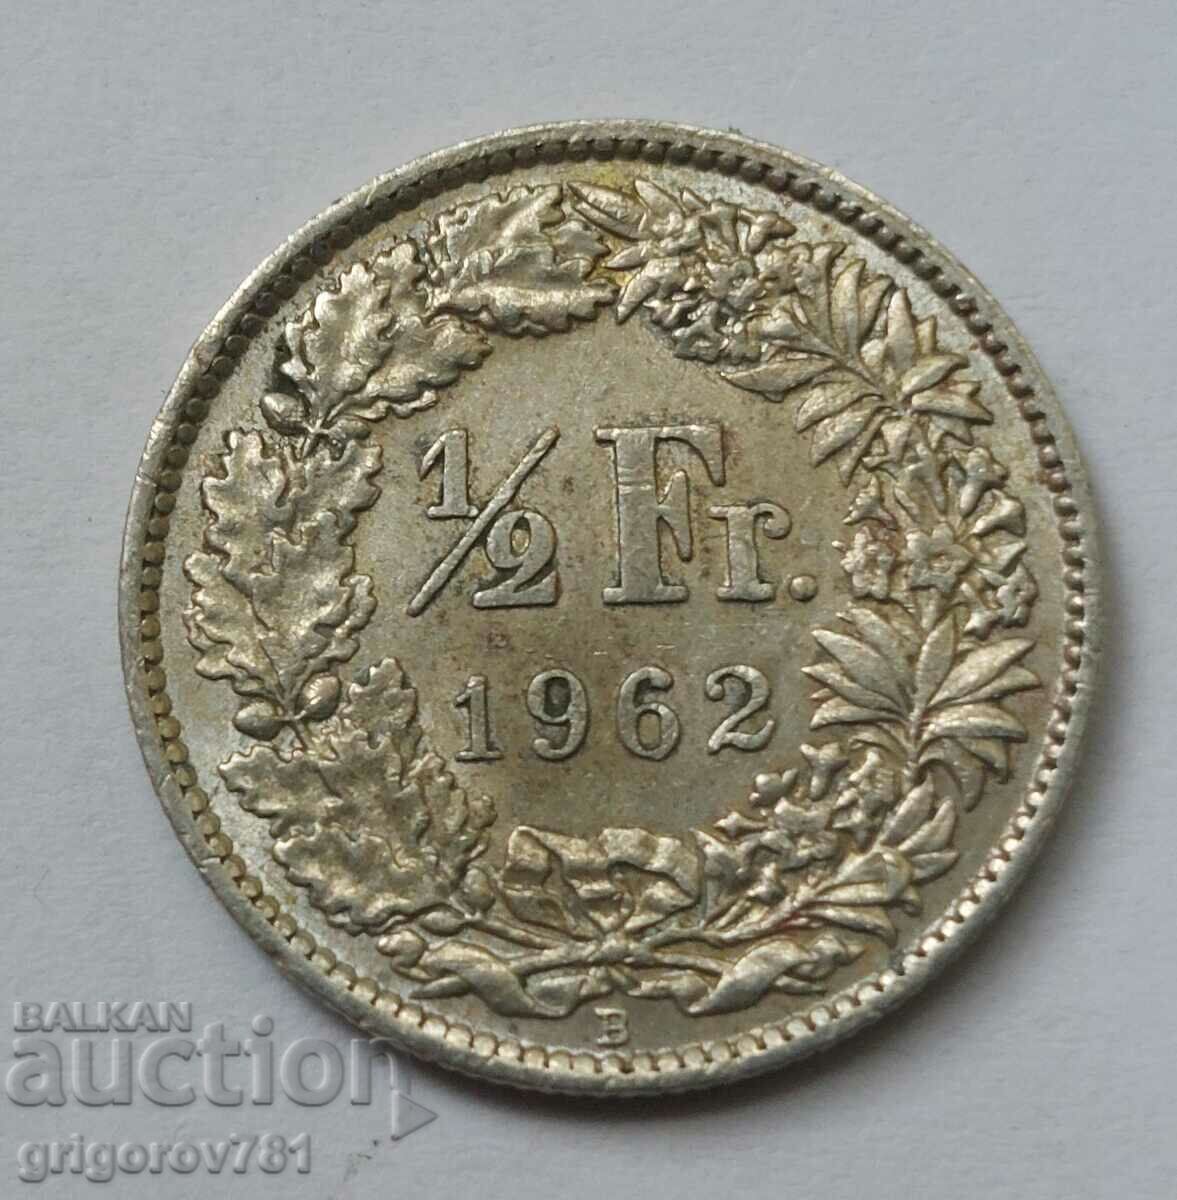 Ασημένιο φράγκο 1/2 Ελβετία 1962 Β - Ασημένιο νόμισμα #162